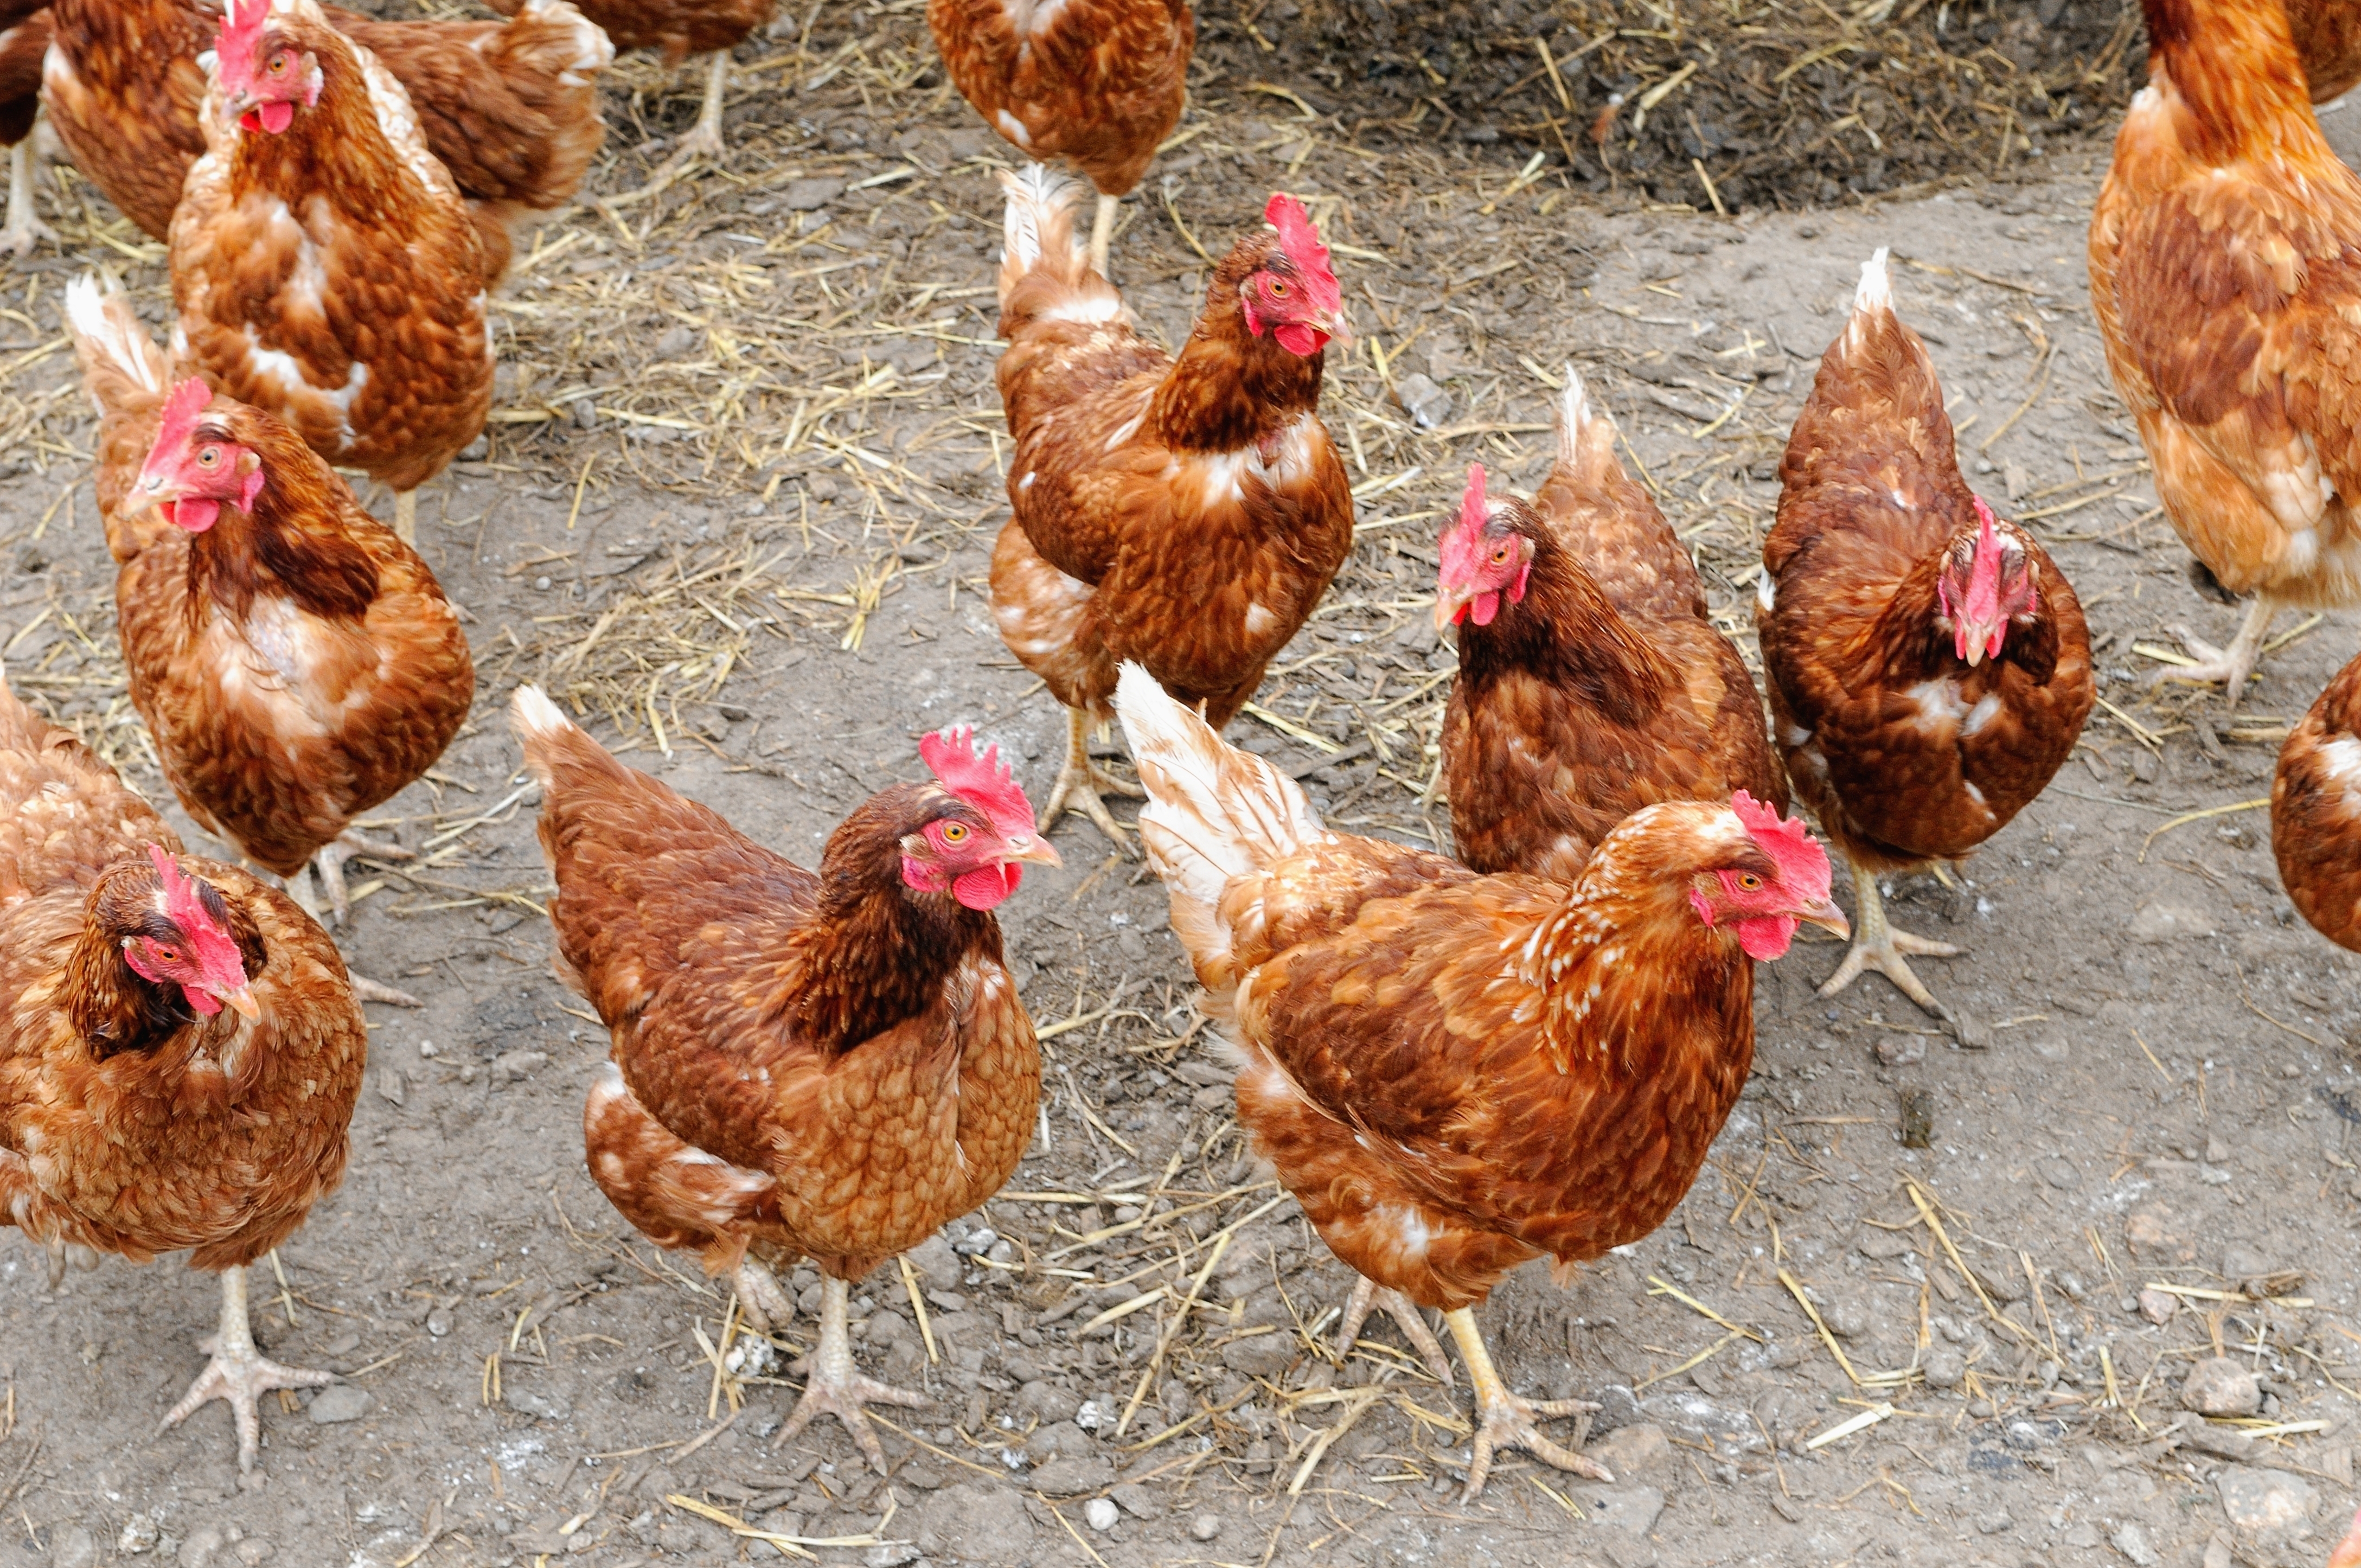     Grippe aviaire : les autorités appellent à la vigilance en Martinique

